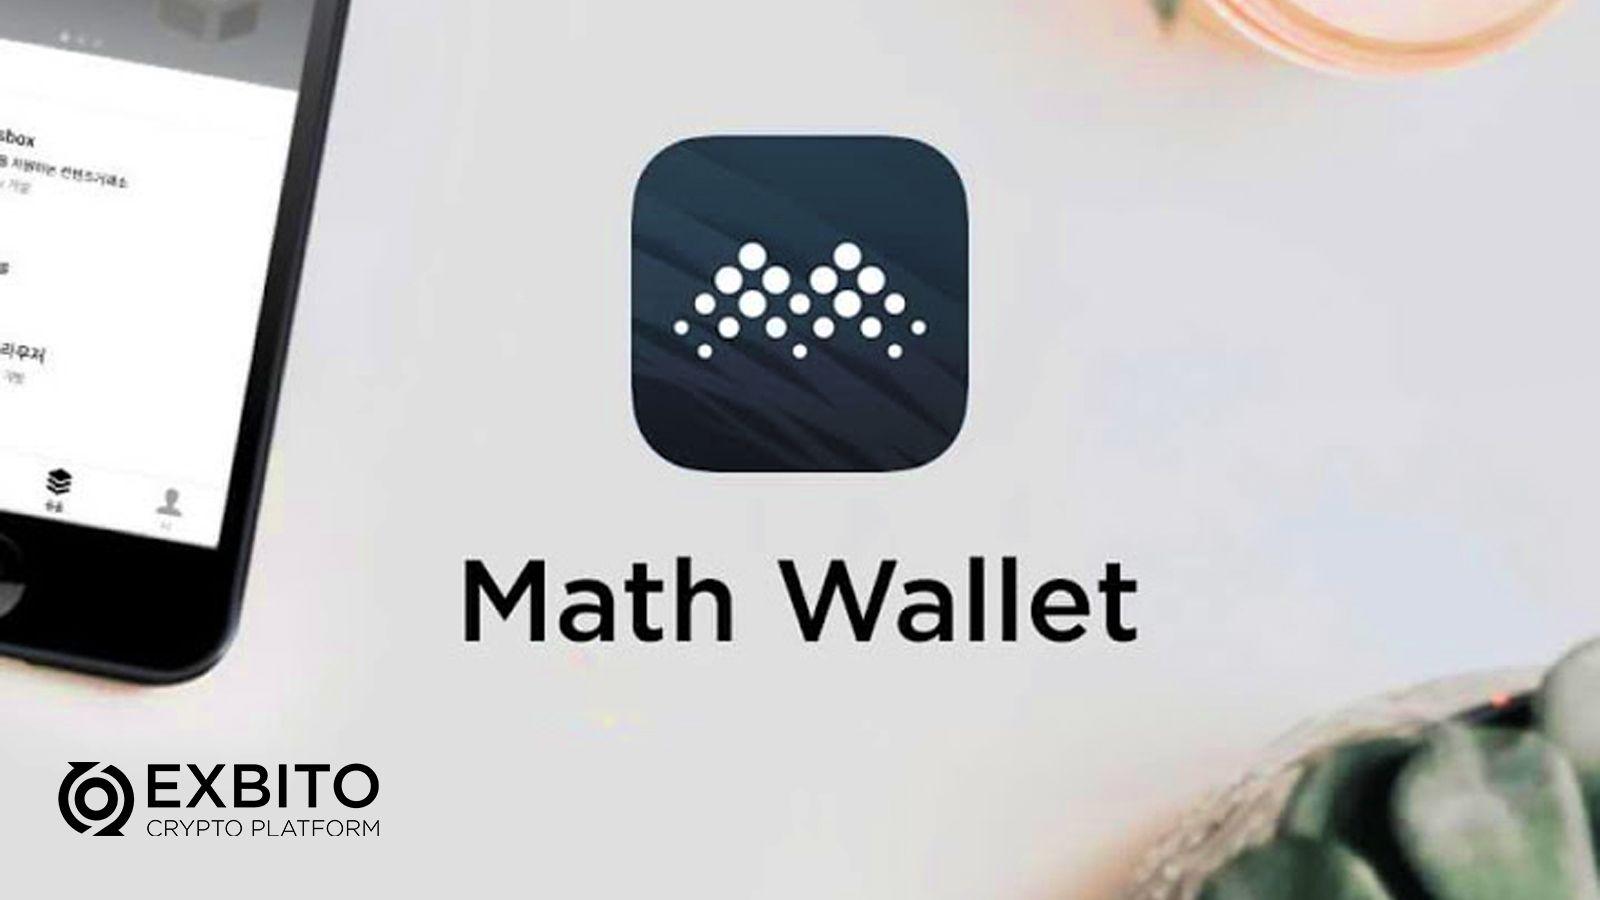 معرفی کیف پول مث‌ولت (Math Wallet)